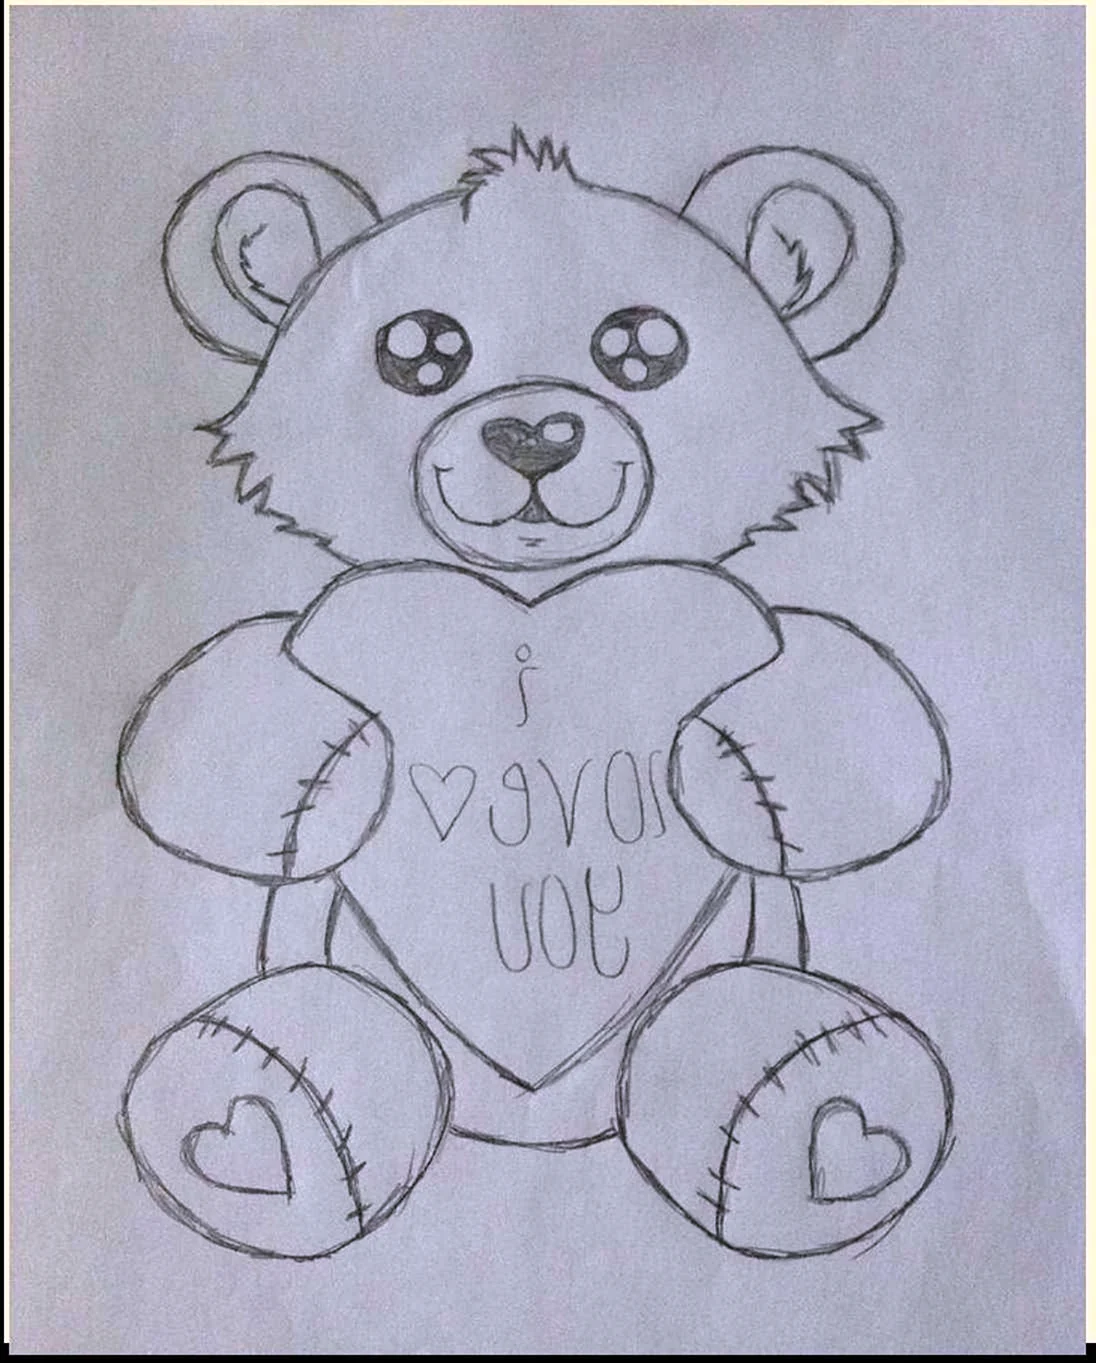 Рисунок медведя карандашом для срисовки